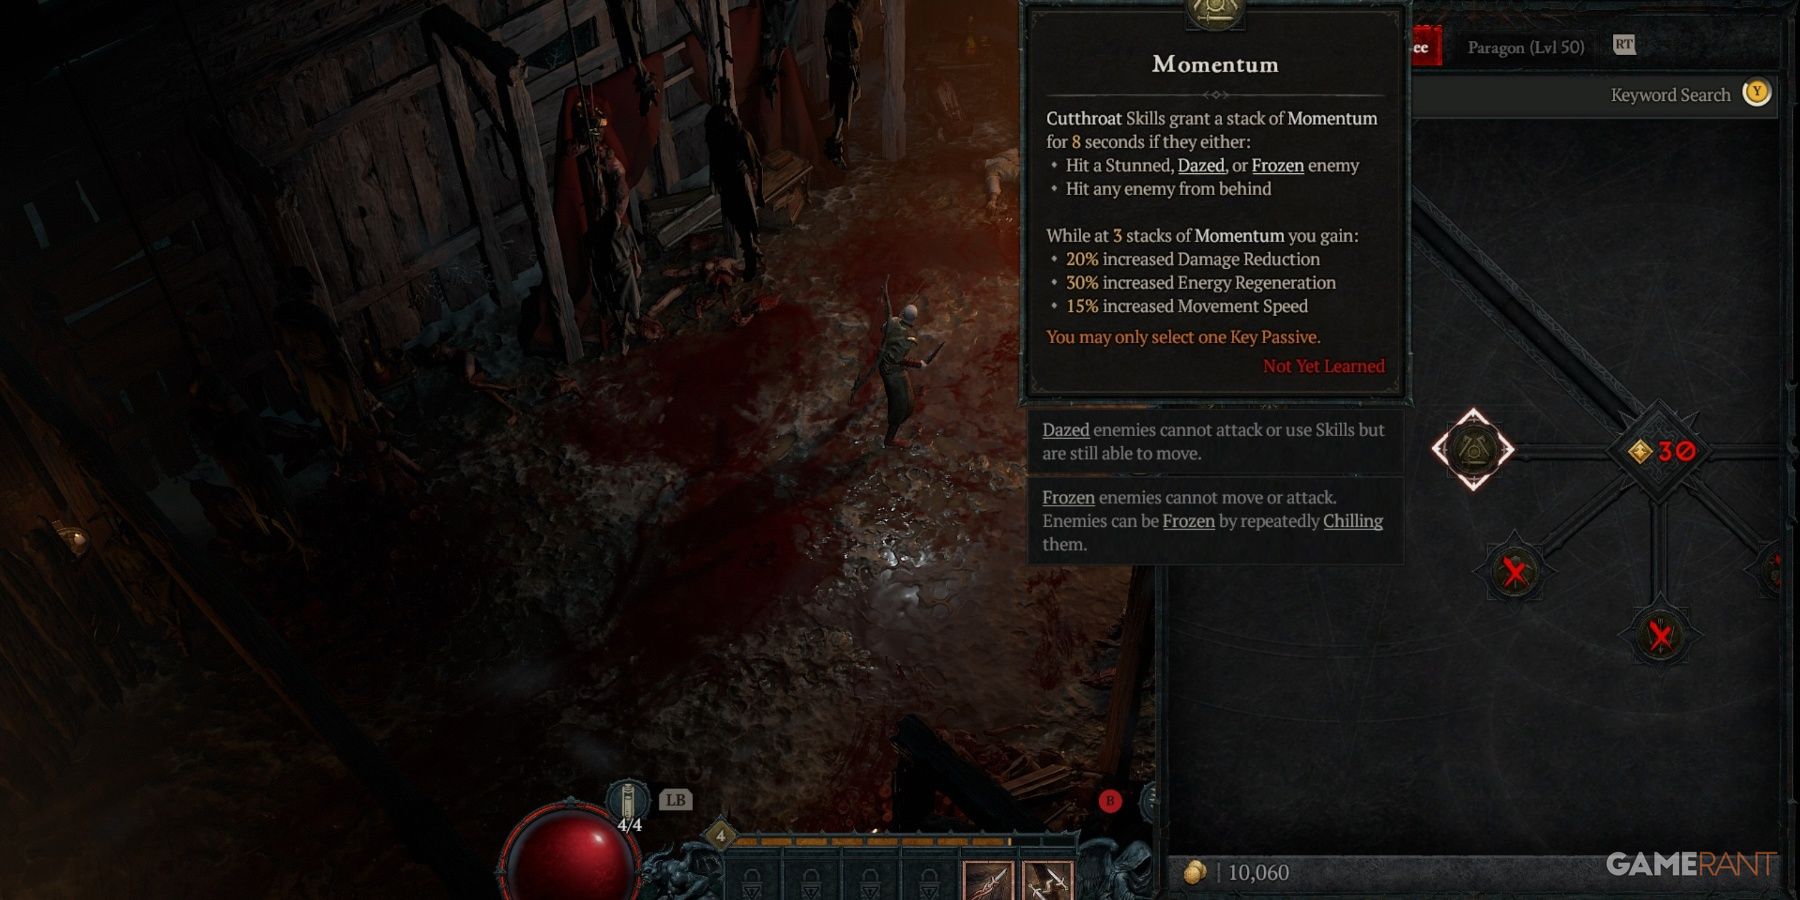 Diablo 4 Momentum Skill Description